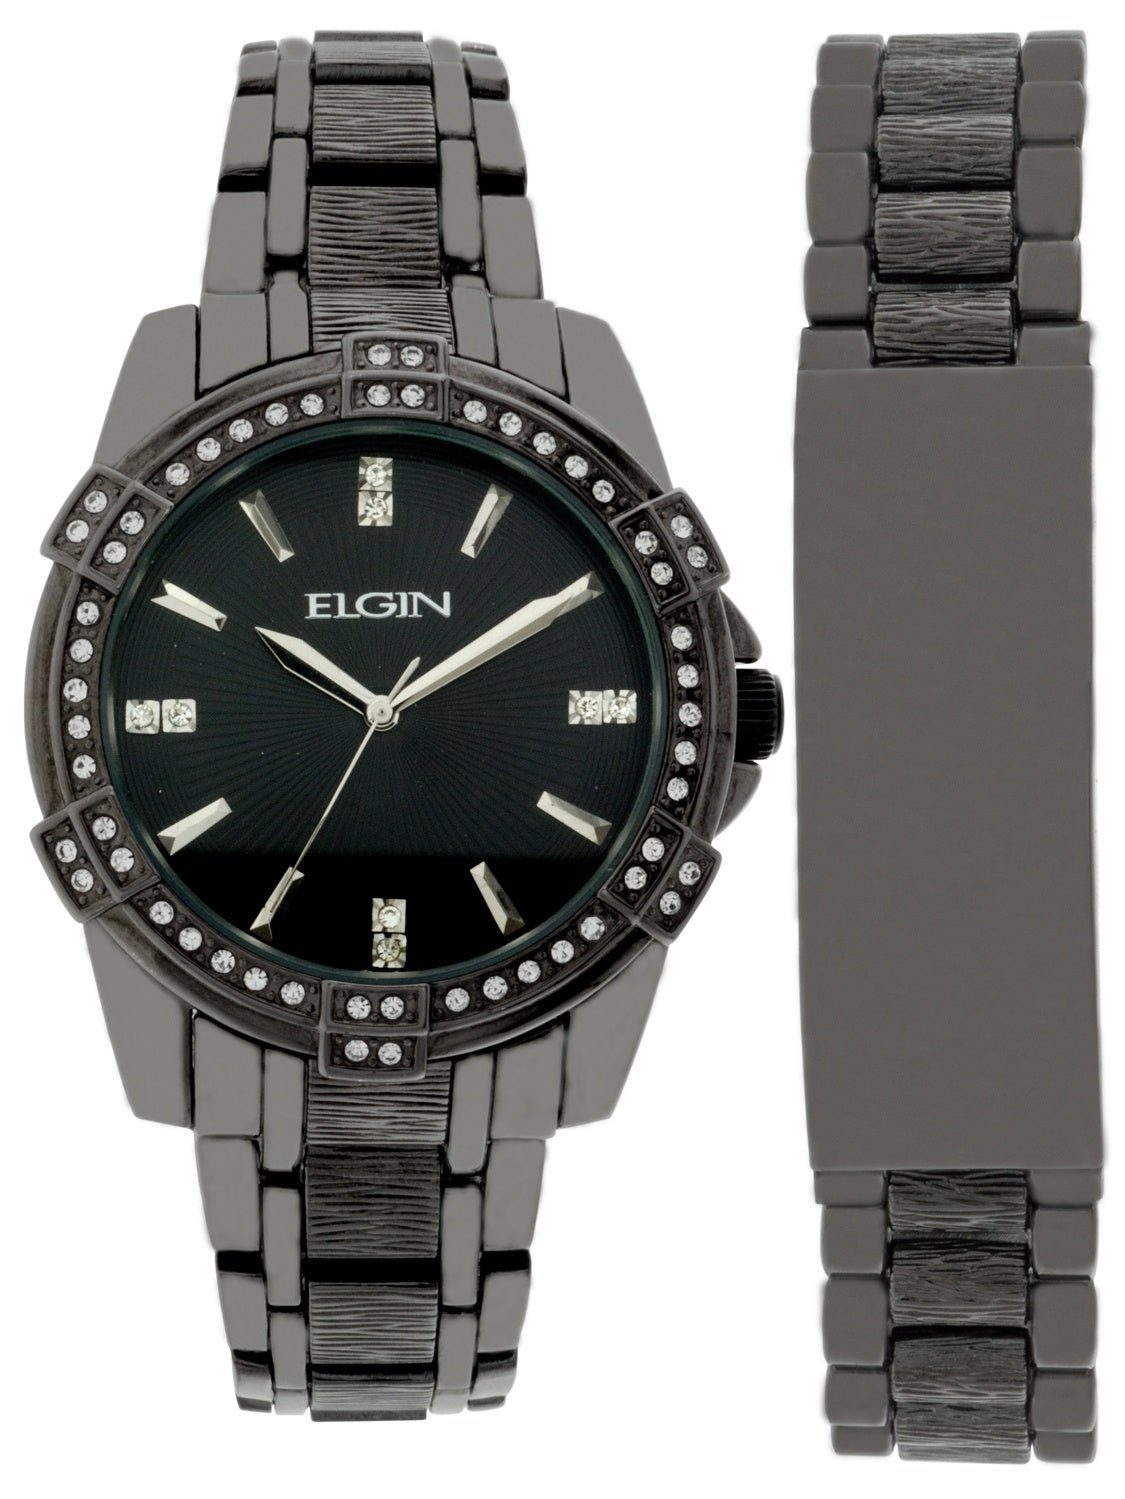 Model: Elgin Men's Two Tone Bracelet Watch-Fg10009gnst